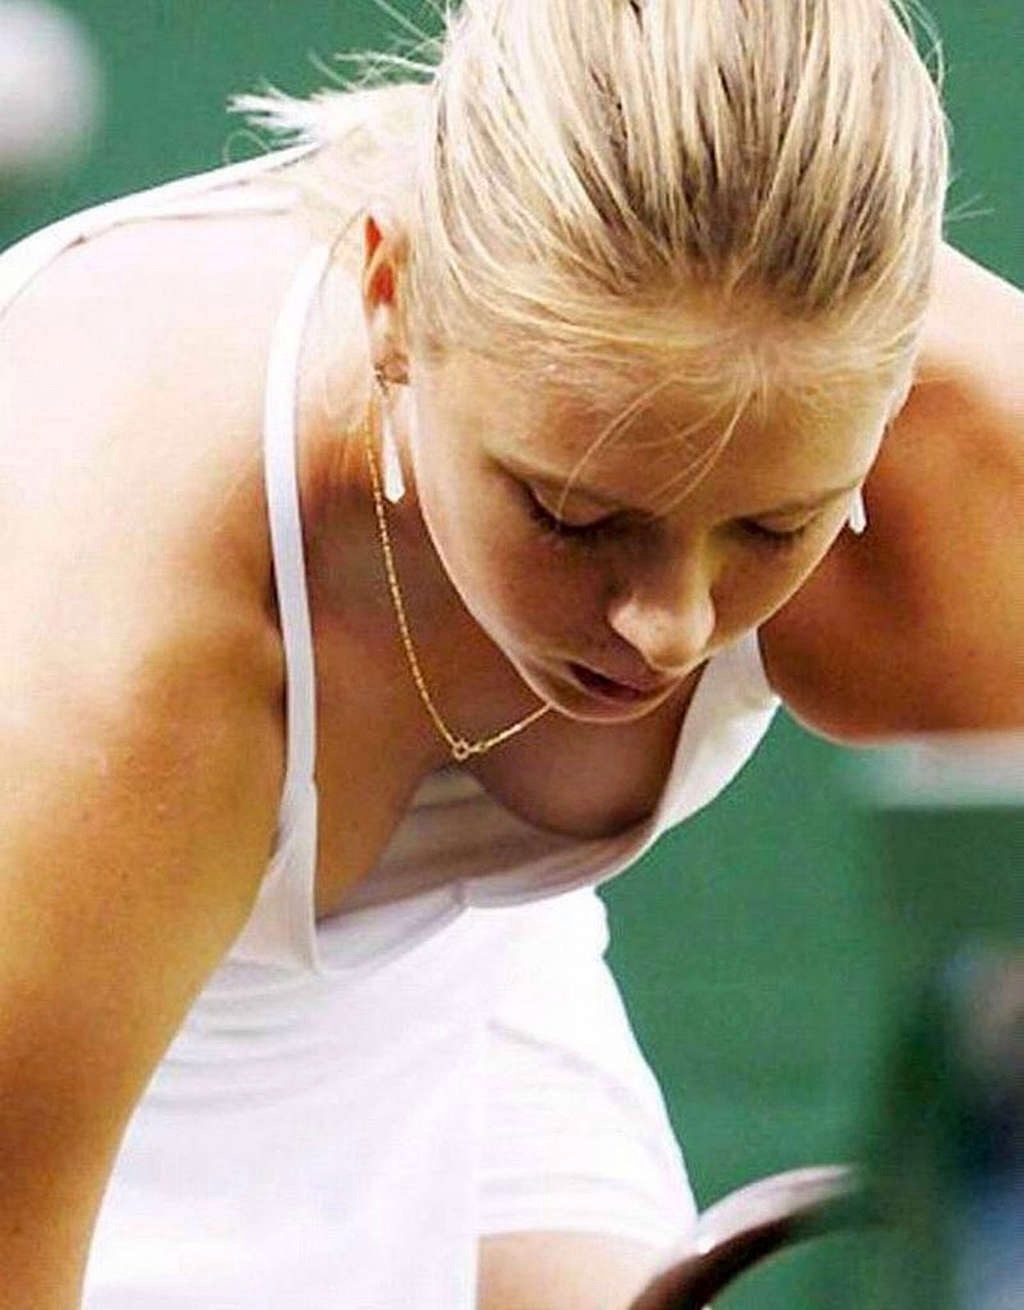 胸元ユルユルテニスウェアでおっぱいポロリしてるマリア・シャラポワ